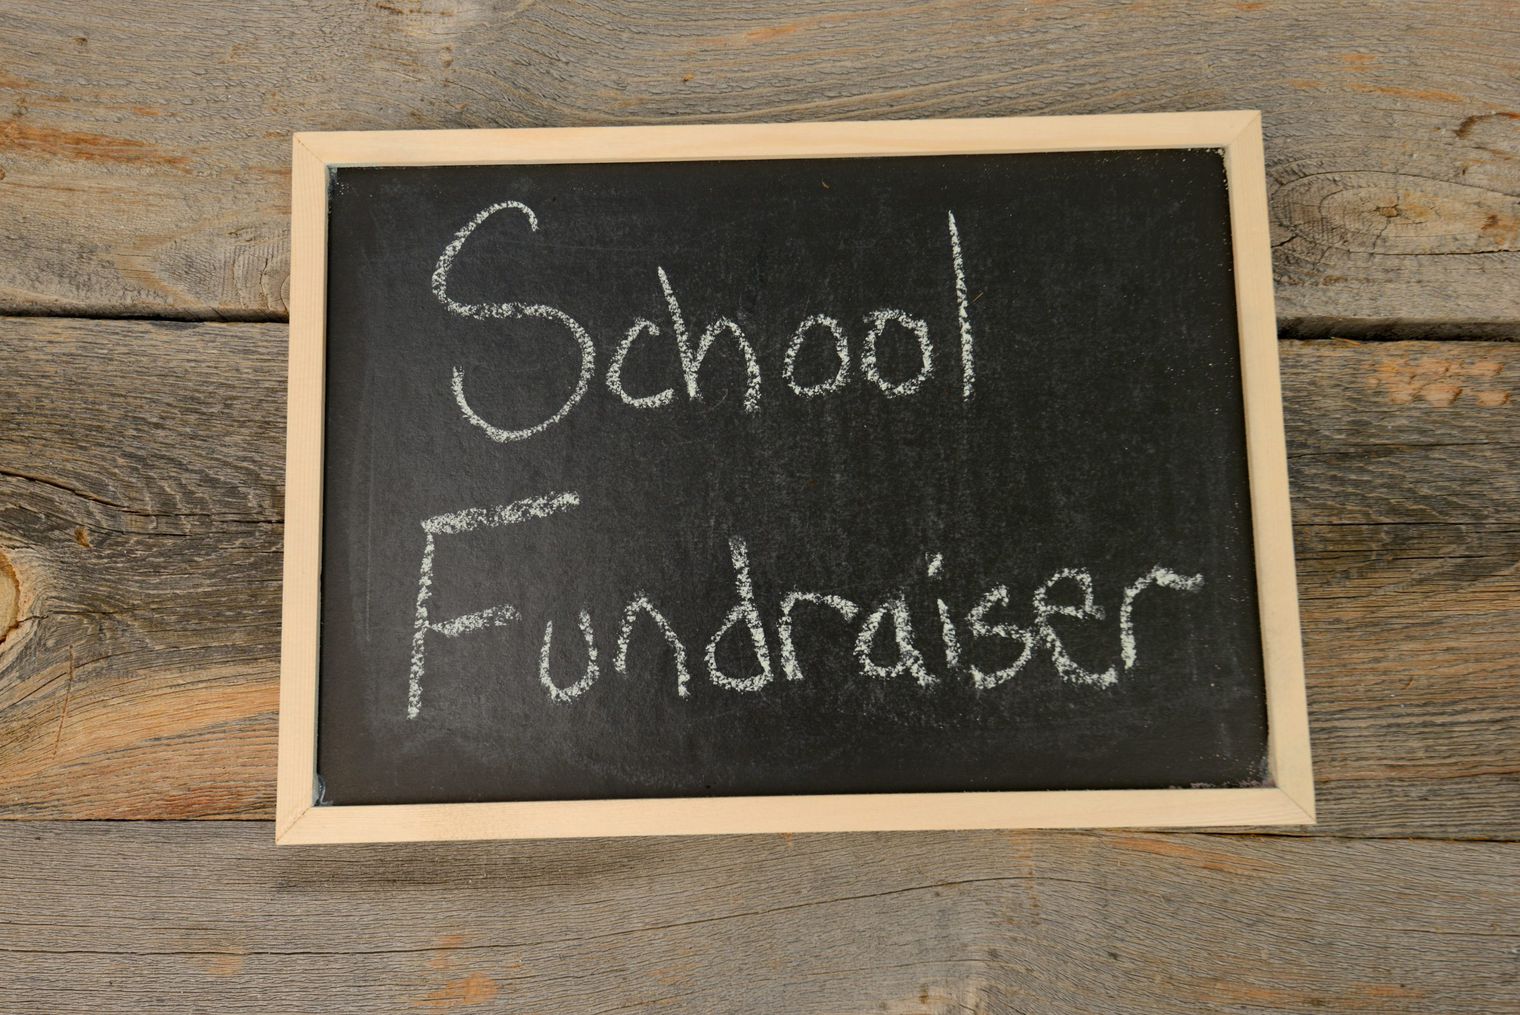 Words School Fundraiser written on a chalkboard